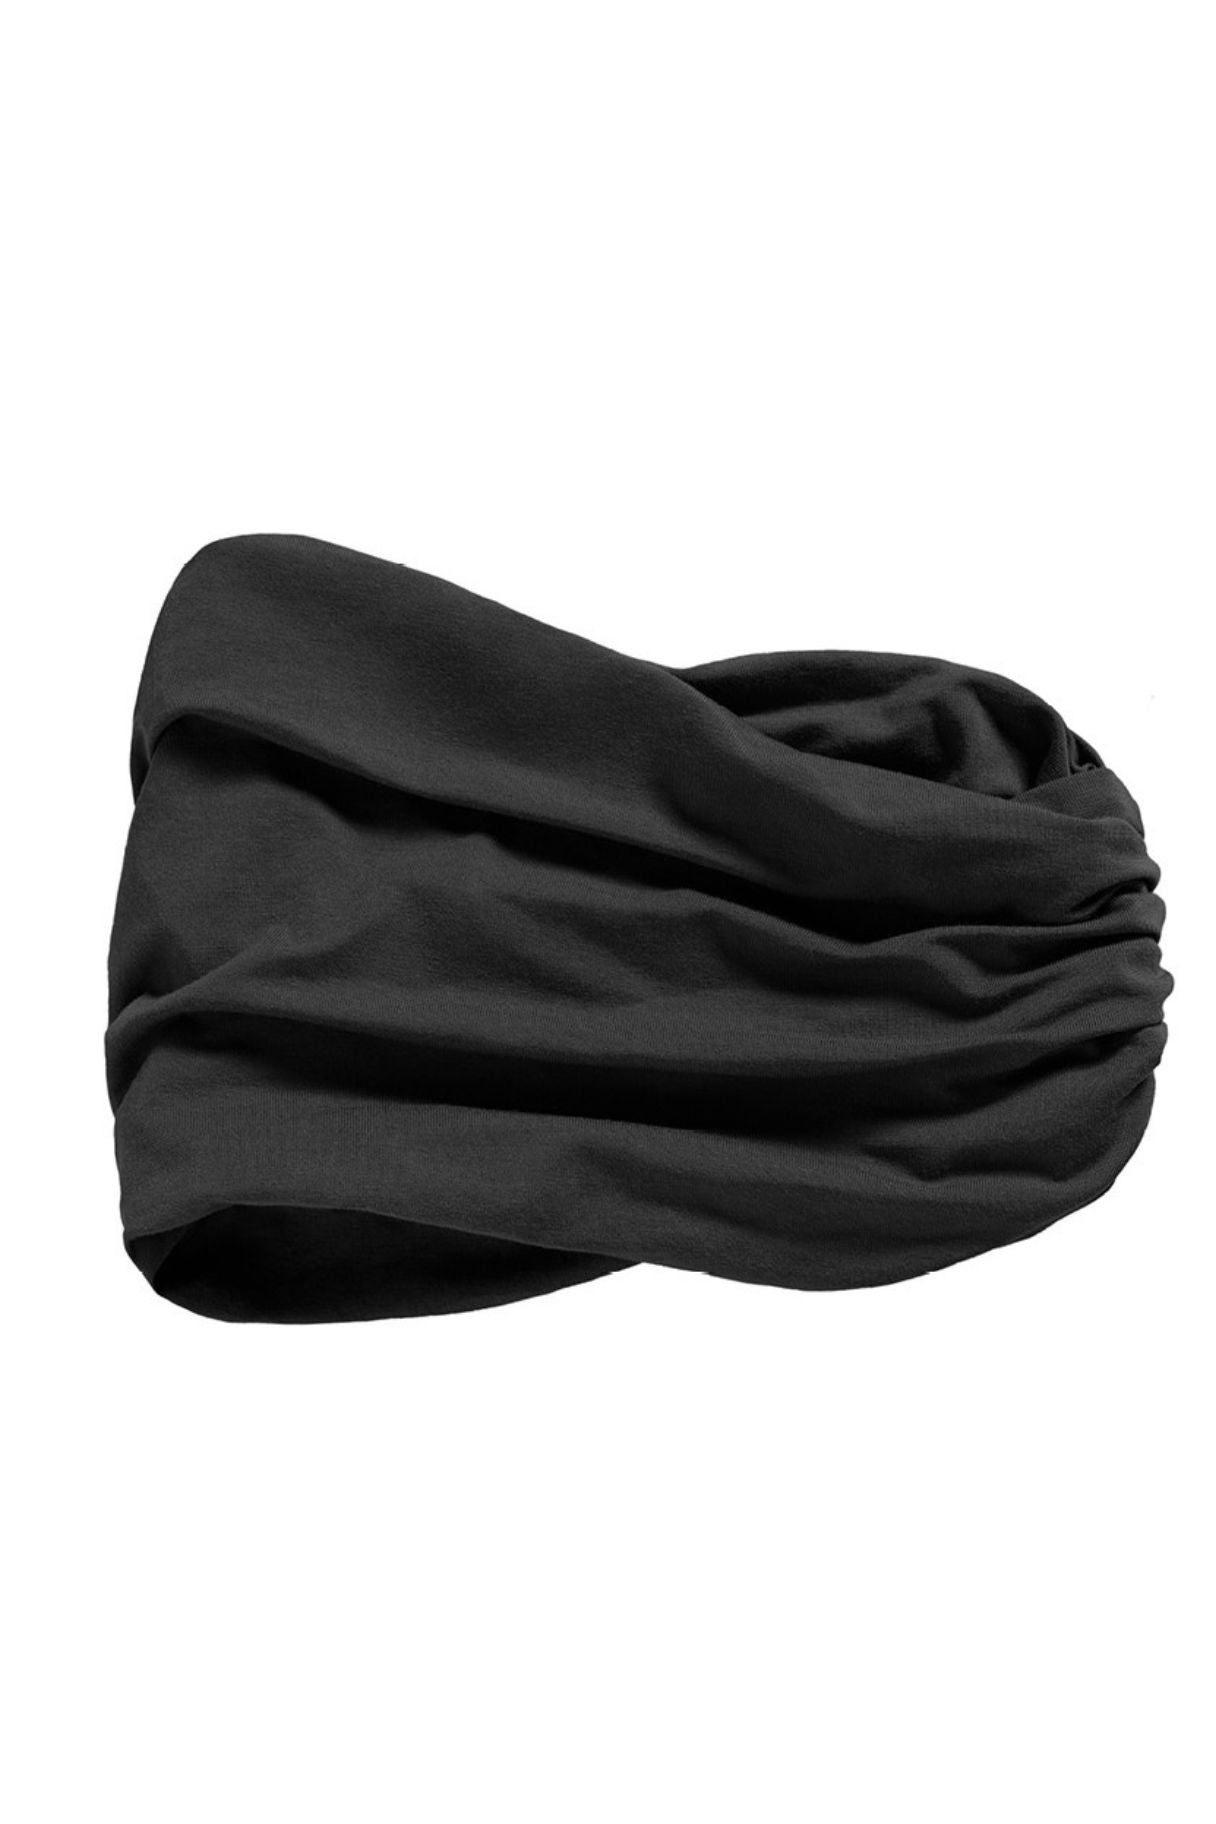 HOC Kiara Headband - Black